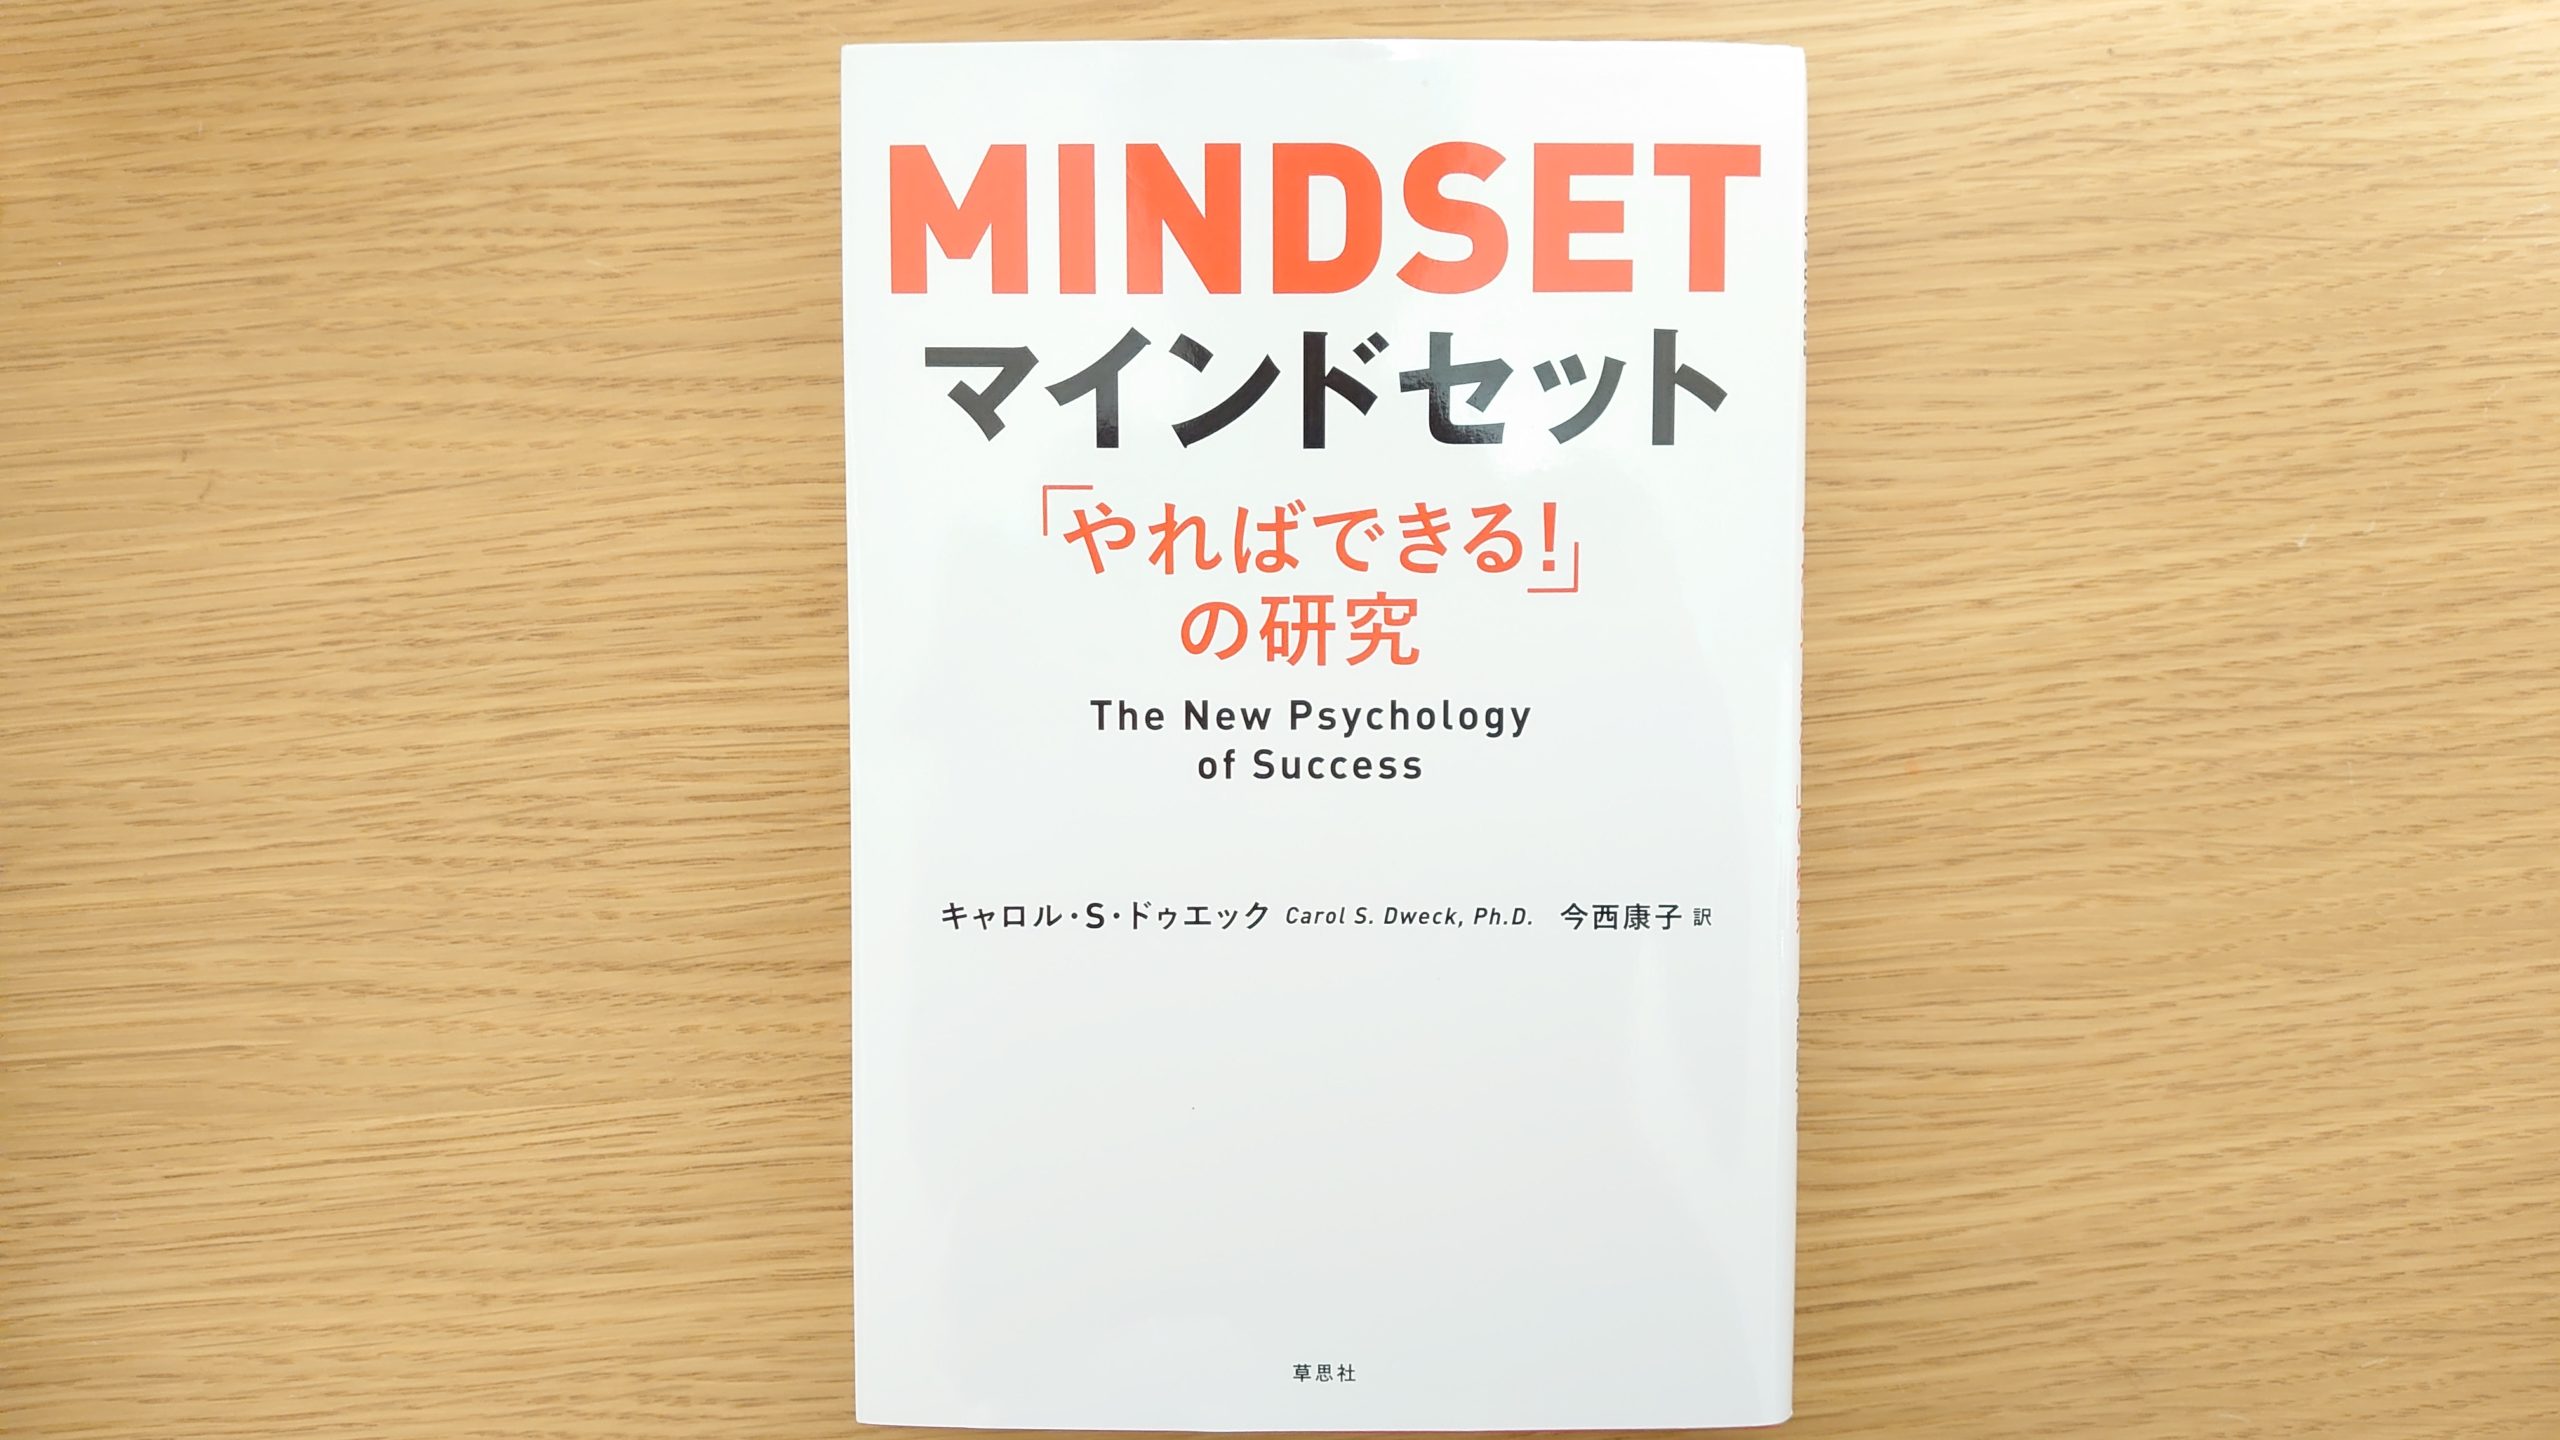 マインドセット 「やればできる!」の研究　日本語版、英語版